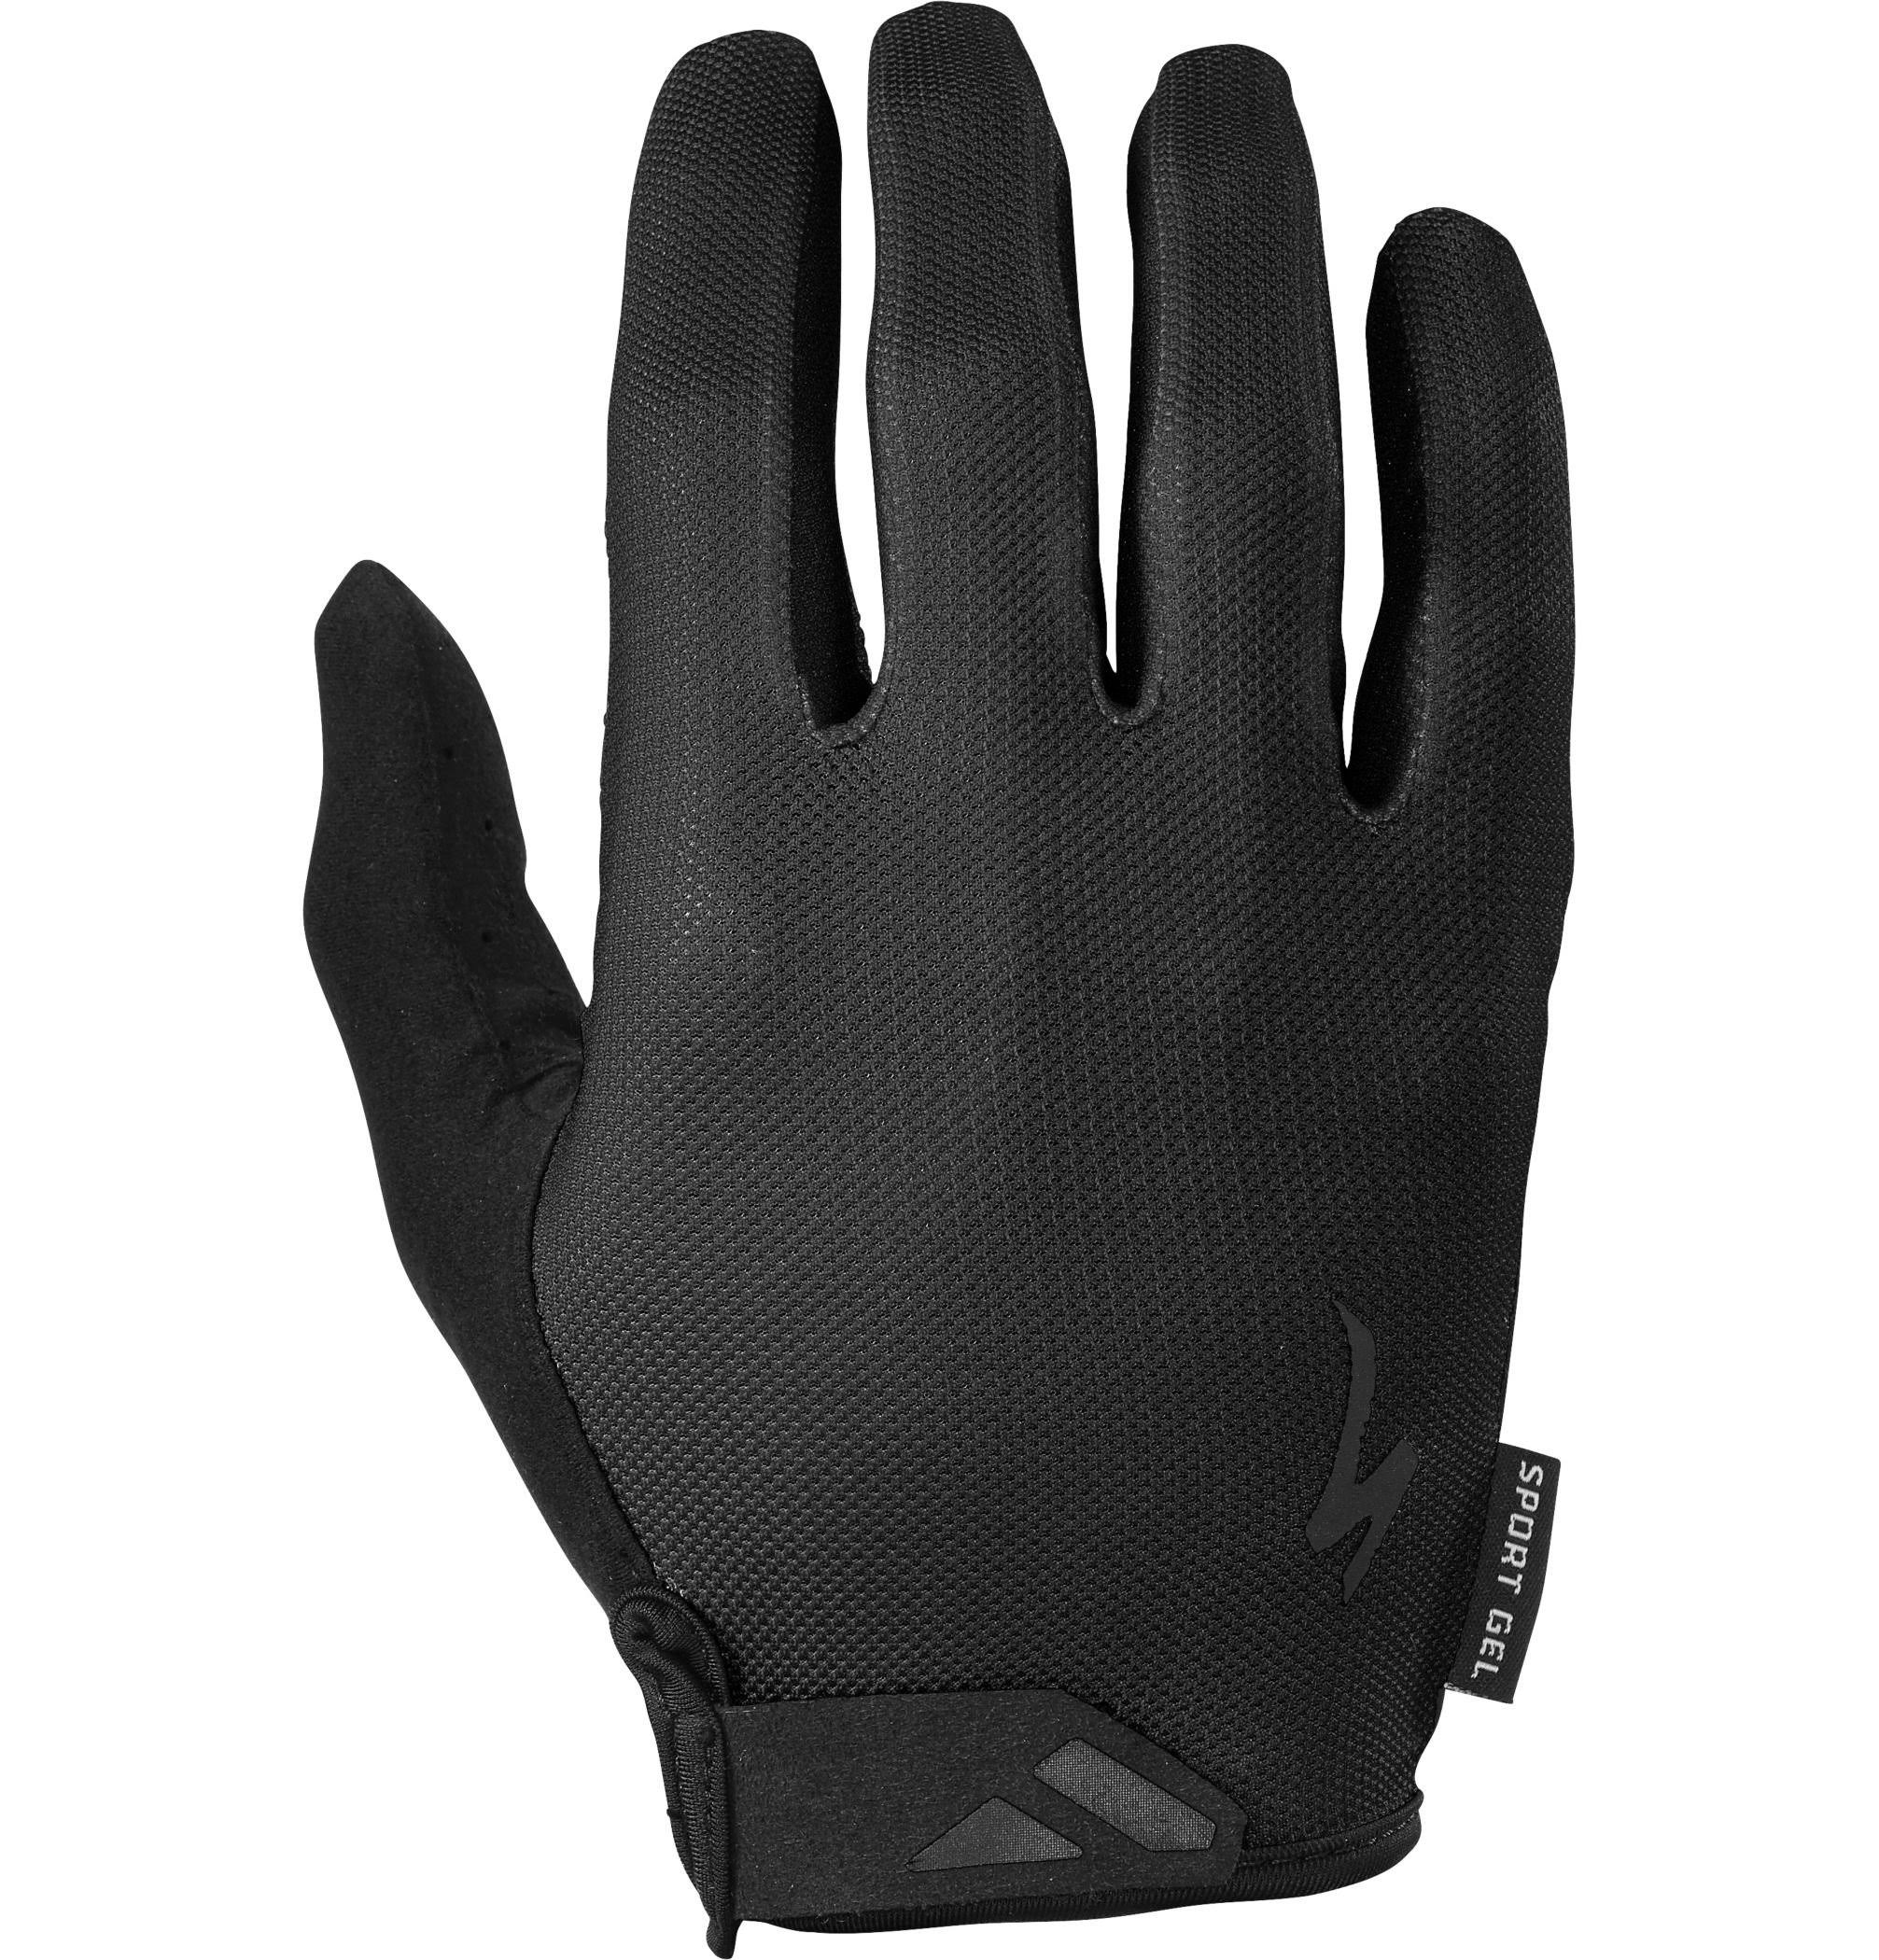 Specialized Body Geometry Sport Gel Long Finger Gloves - Black